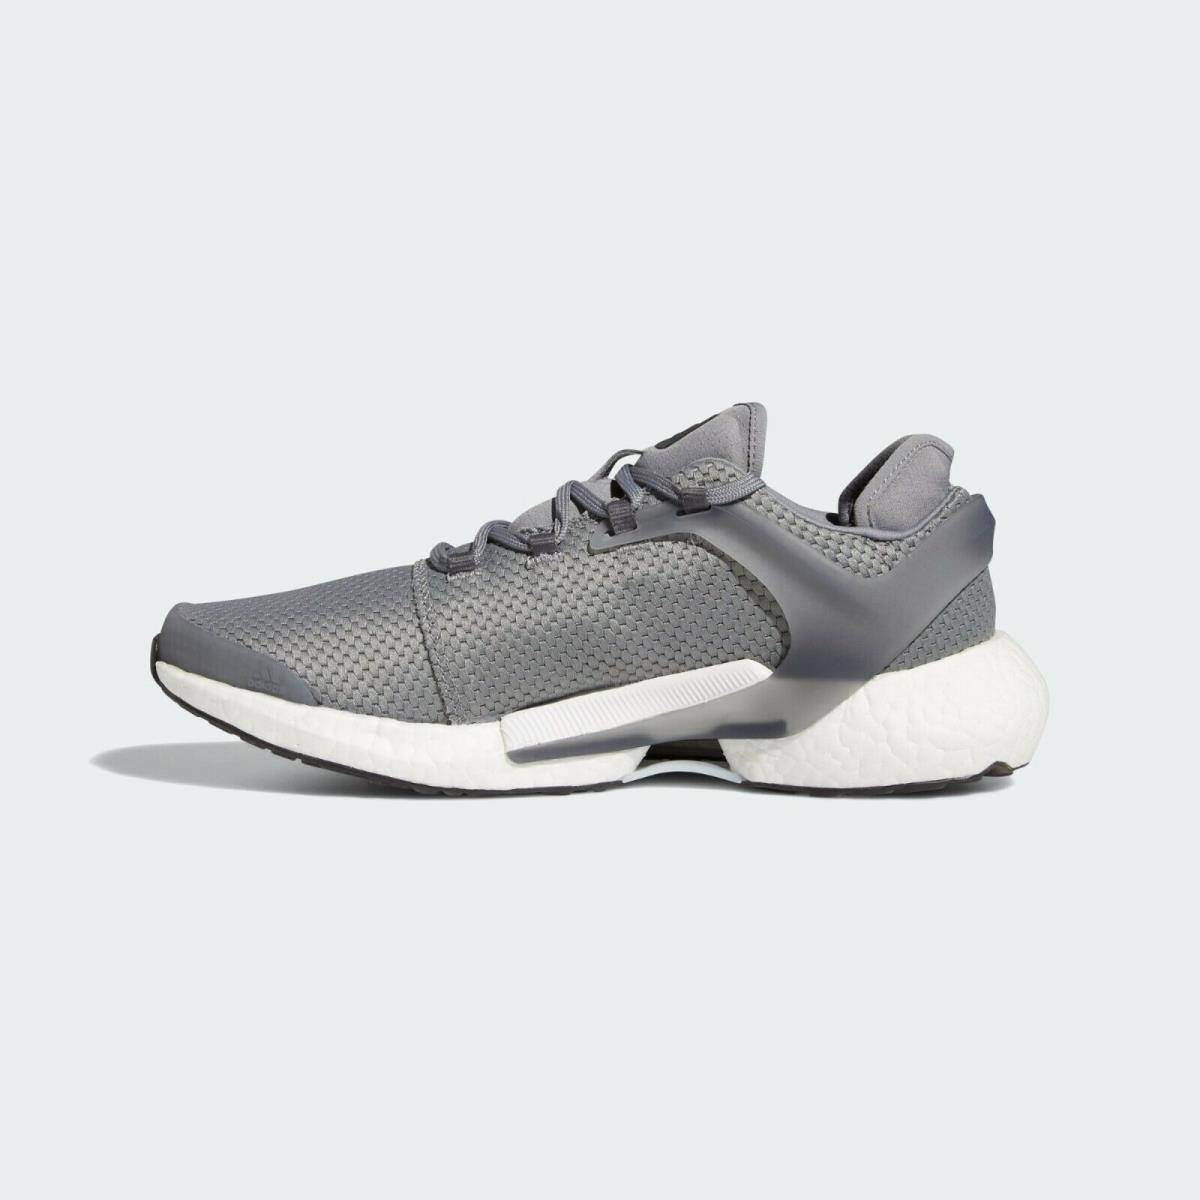 Adidas shoes ALPHATORSION - Grey Three/Core Black/Grey 10